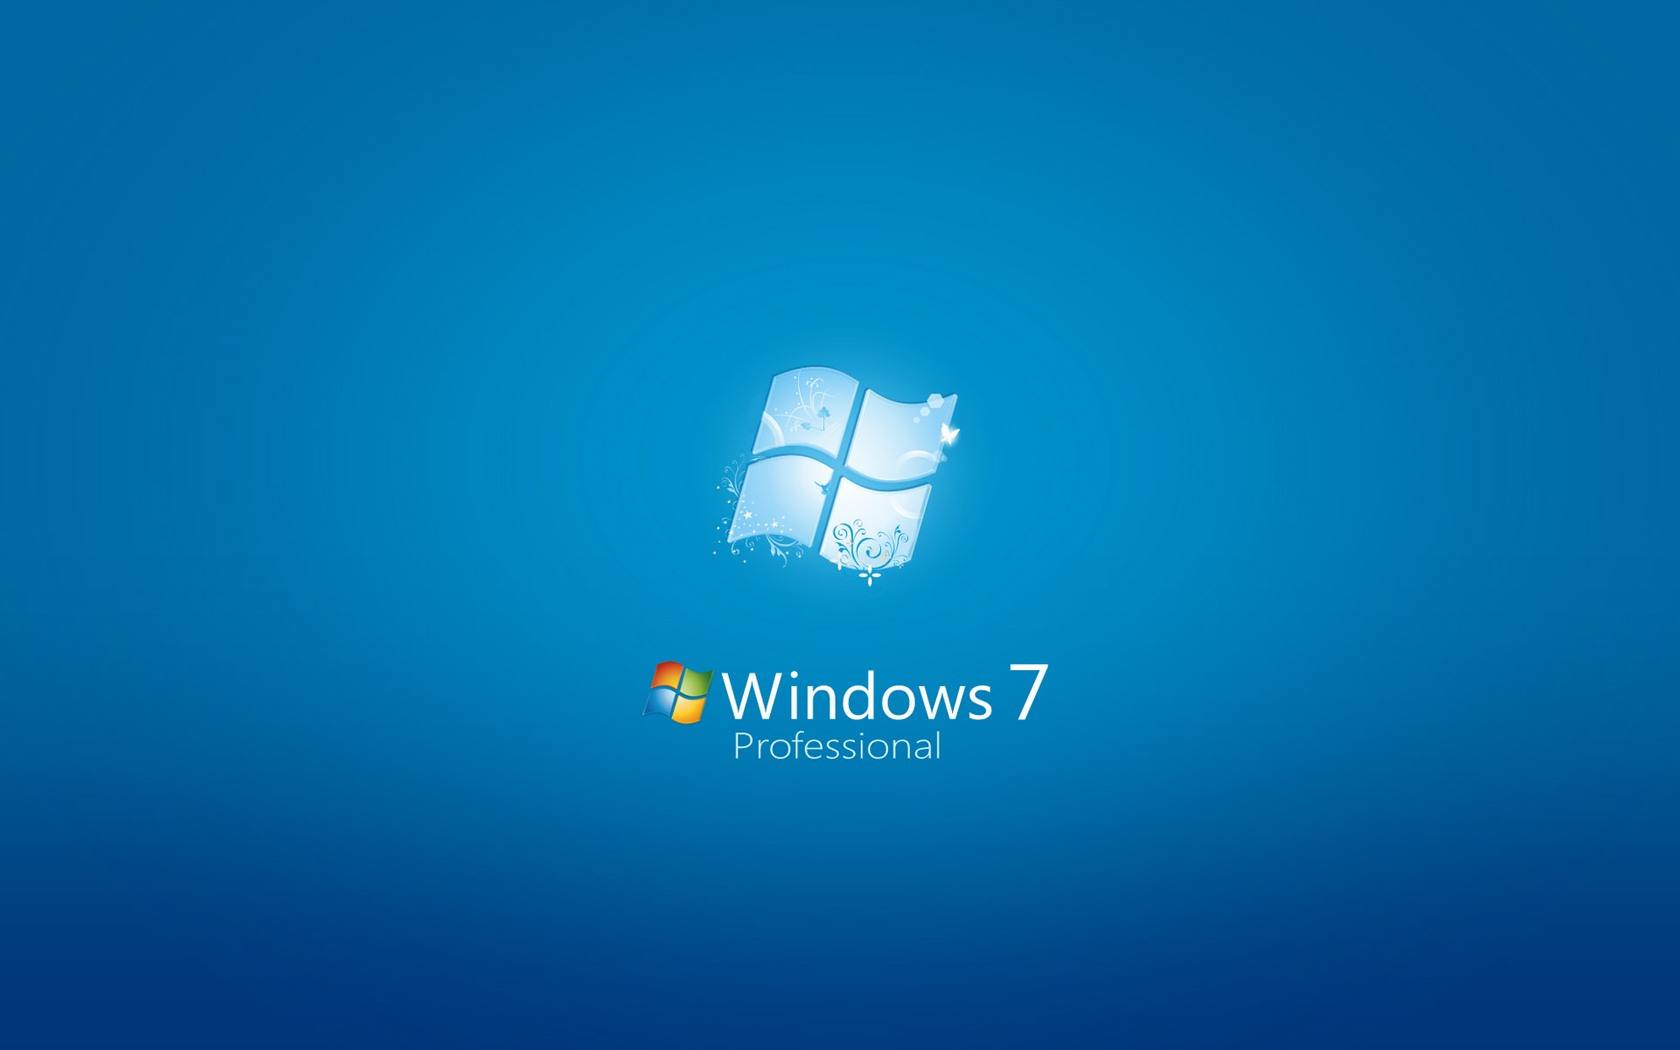 以前版本的windows可以删除吗？